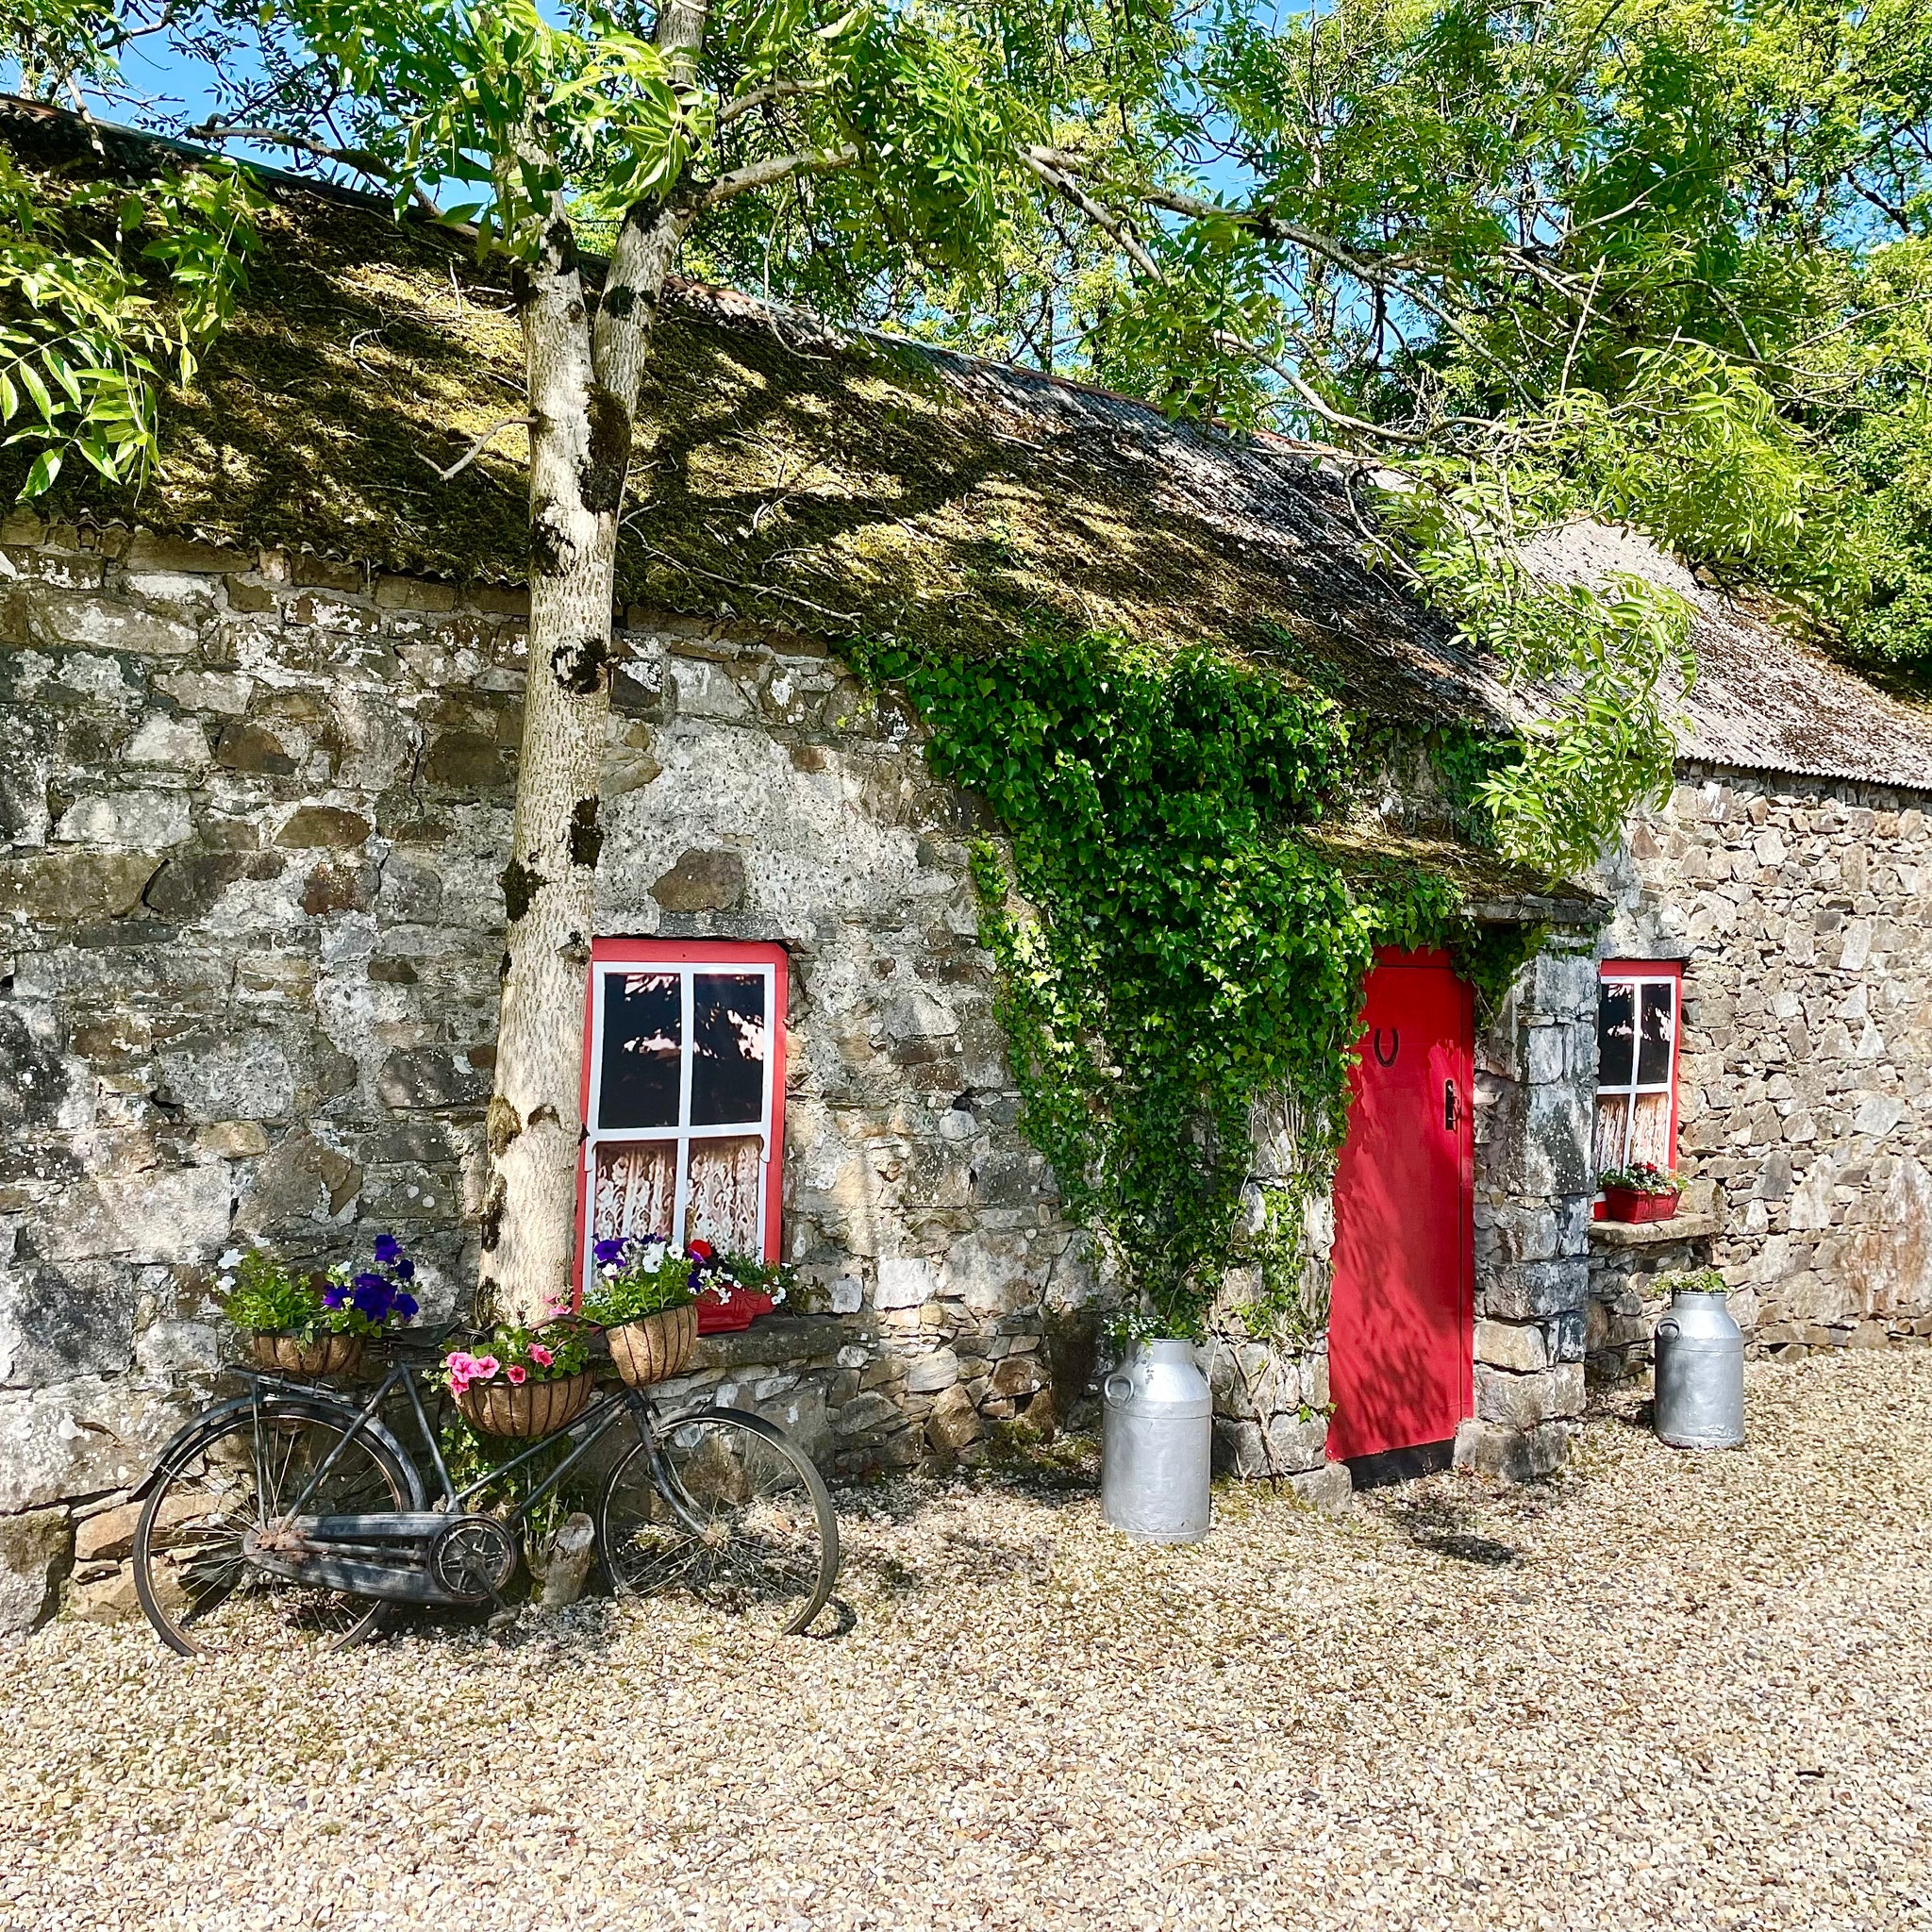 Lee's Cottage: A Hidden Gem in Cavan